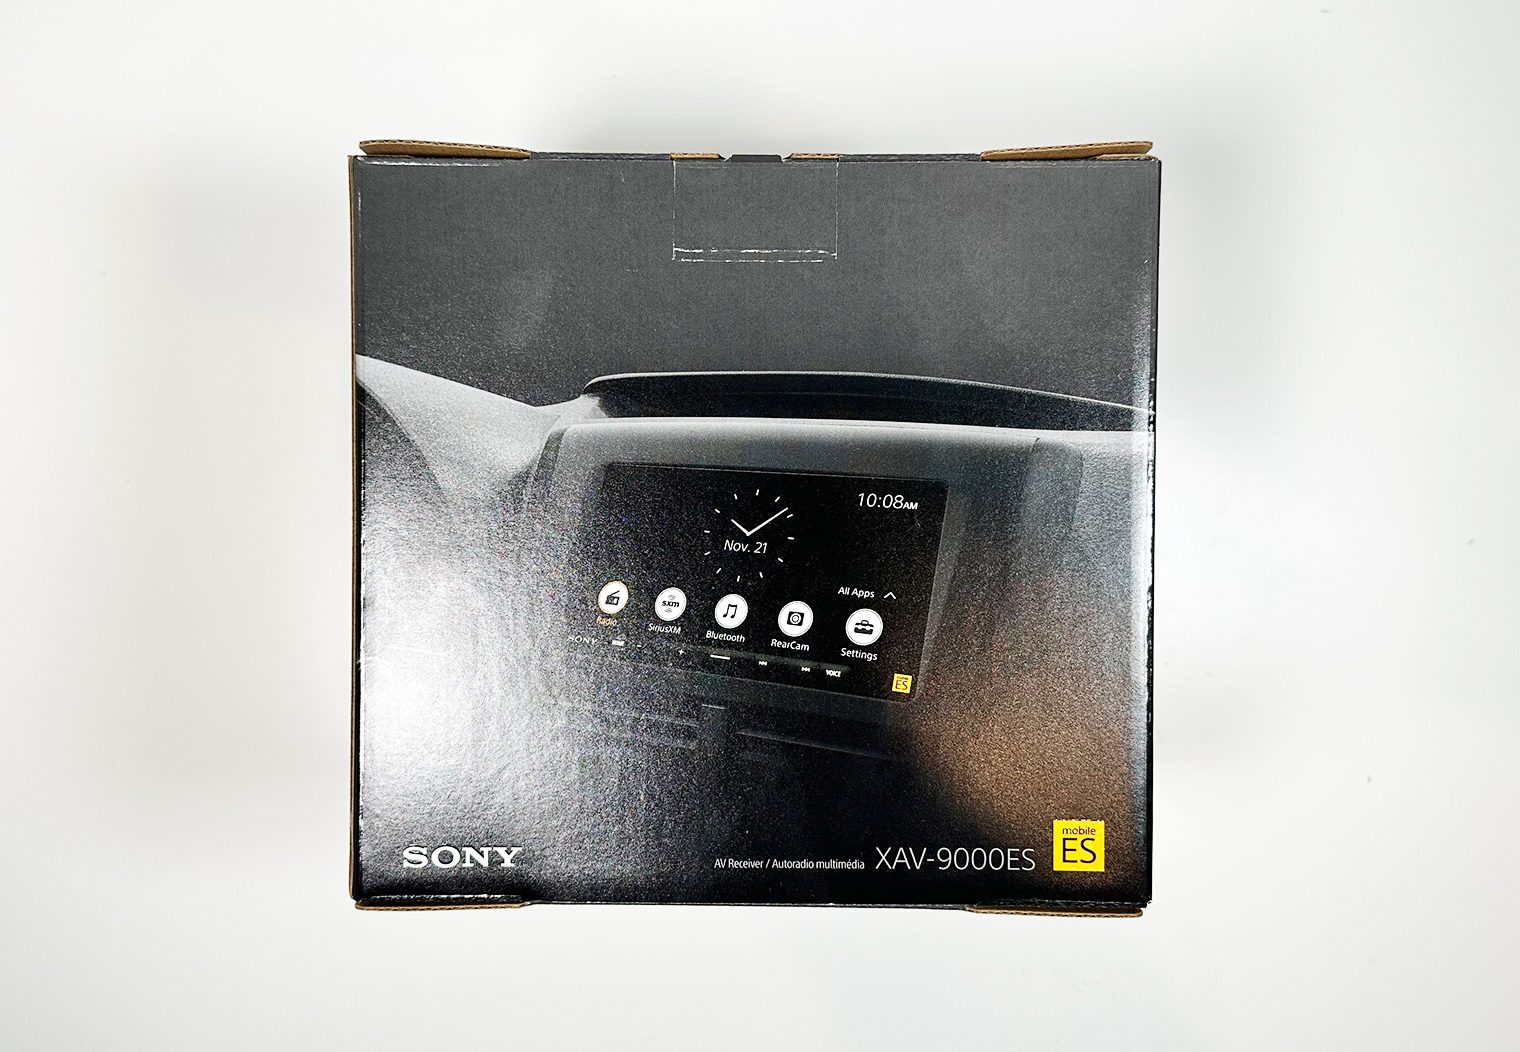 Sony XAV-9000ES packaging rear